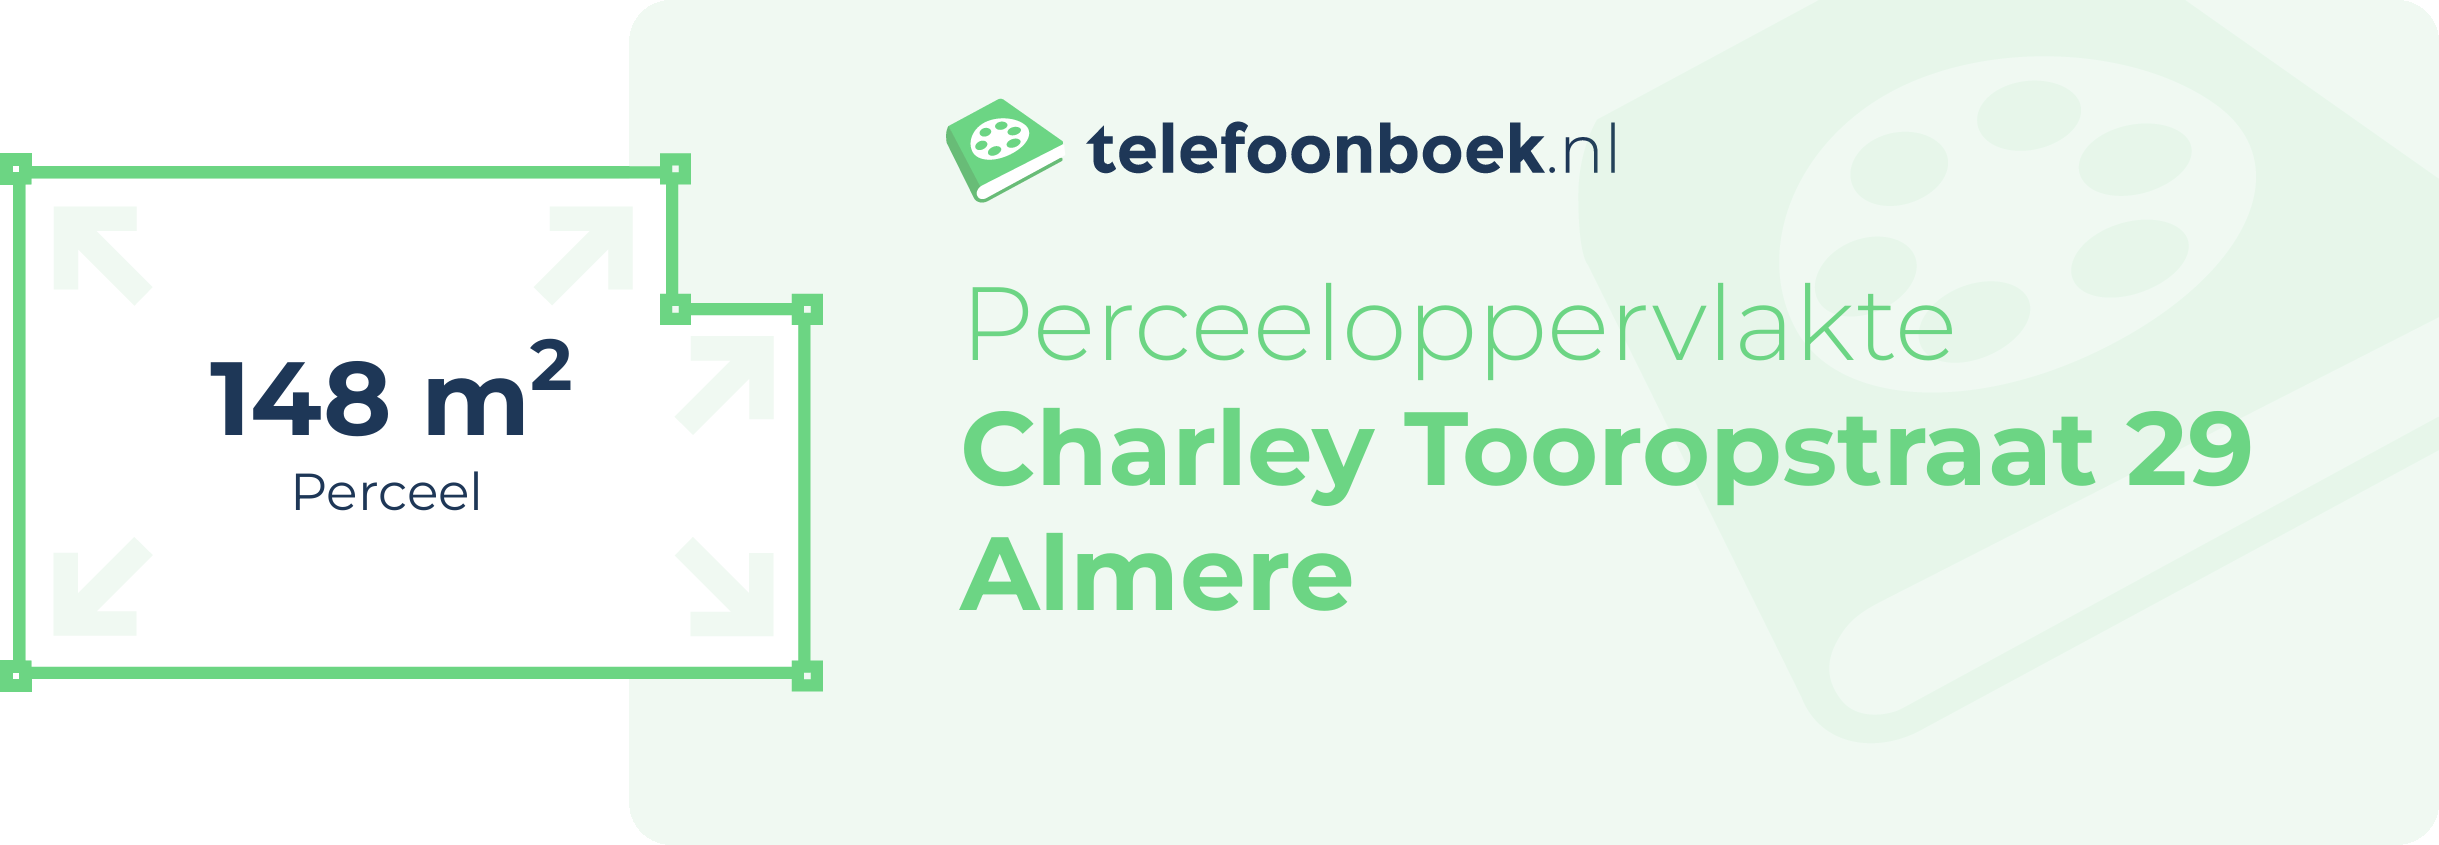 Perceeloppervlakte Charley Tooropstraat 29 Almere